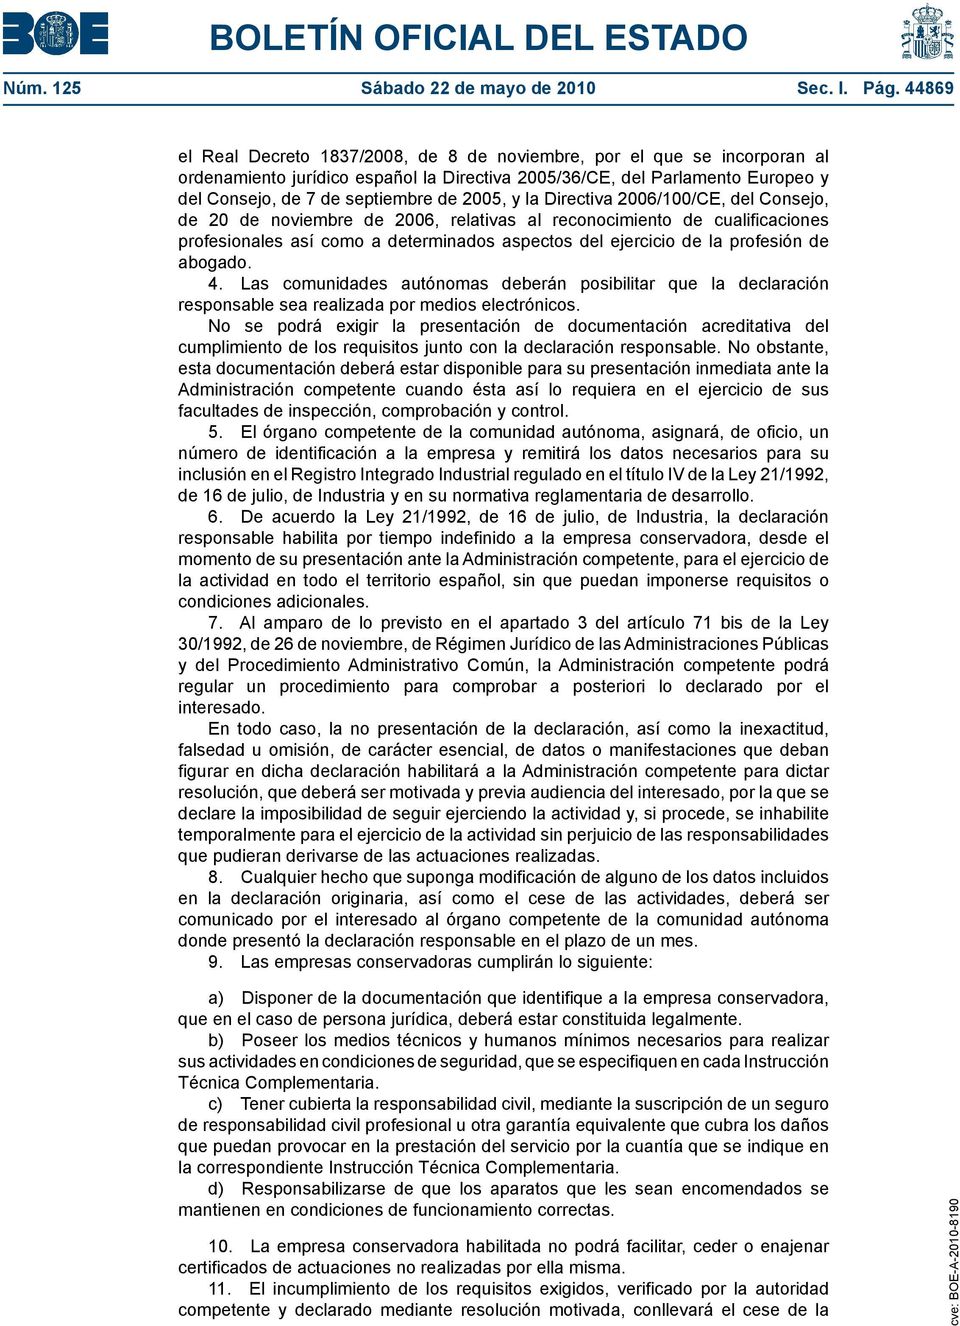 2005, y la Directiva 2006/100/CE, del Consejo, de 20 de noviembre de 2006, relativas al reconocimiento de cualificaciones profesionales así como a determinados aspectos del ejercicio de la profesión